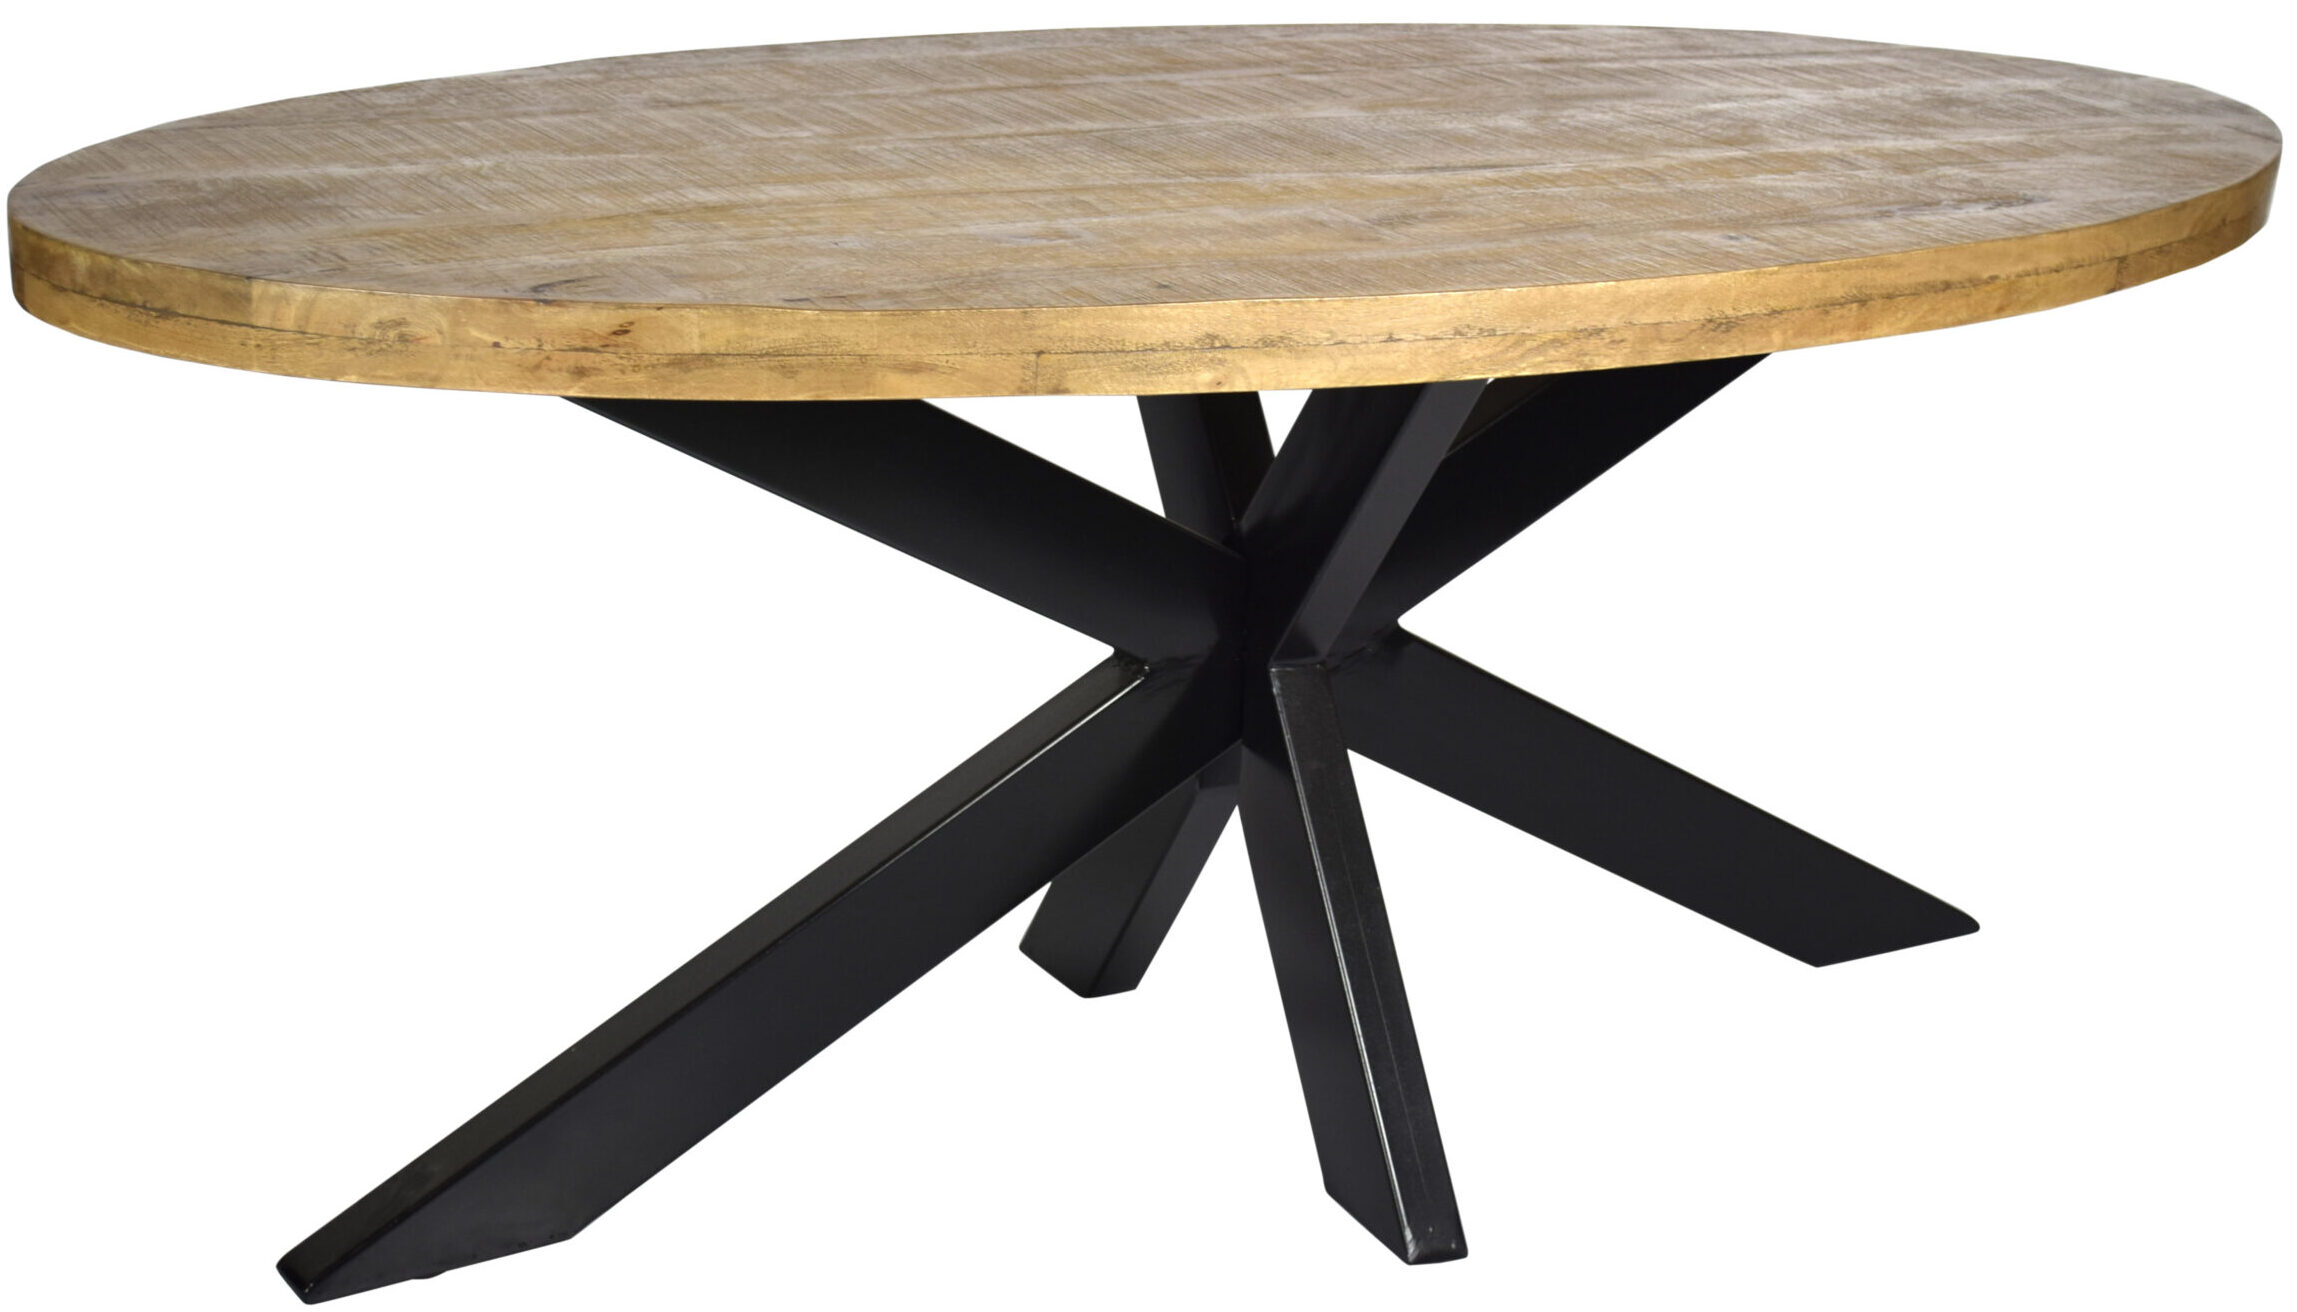 Livingfurn - Moderne Eetkamertafel Oval - Spider Tafelpoot - van Mango Hout en Gecoat Staal - 240 cm - Bruin